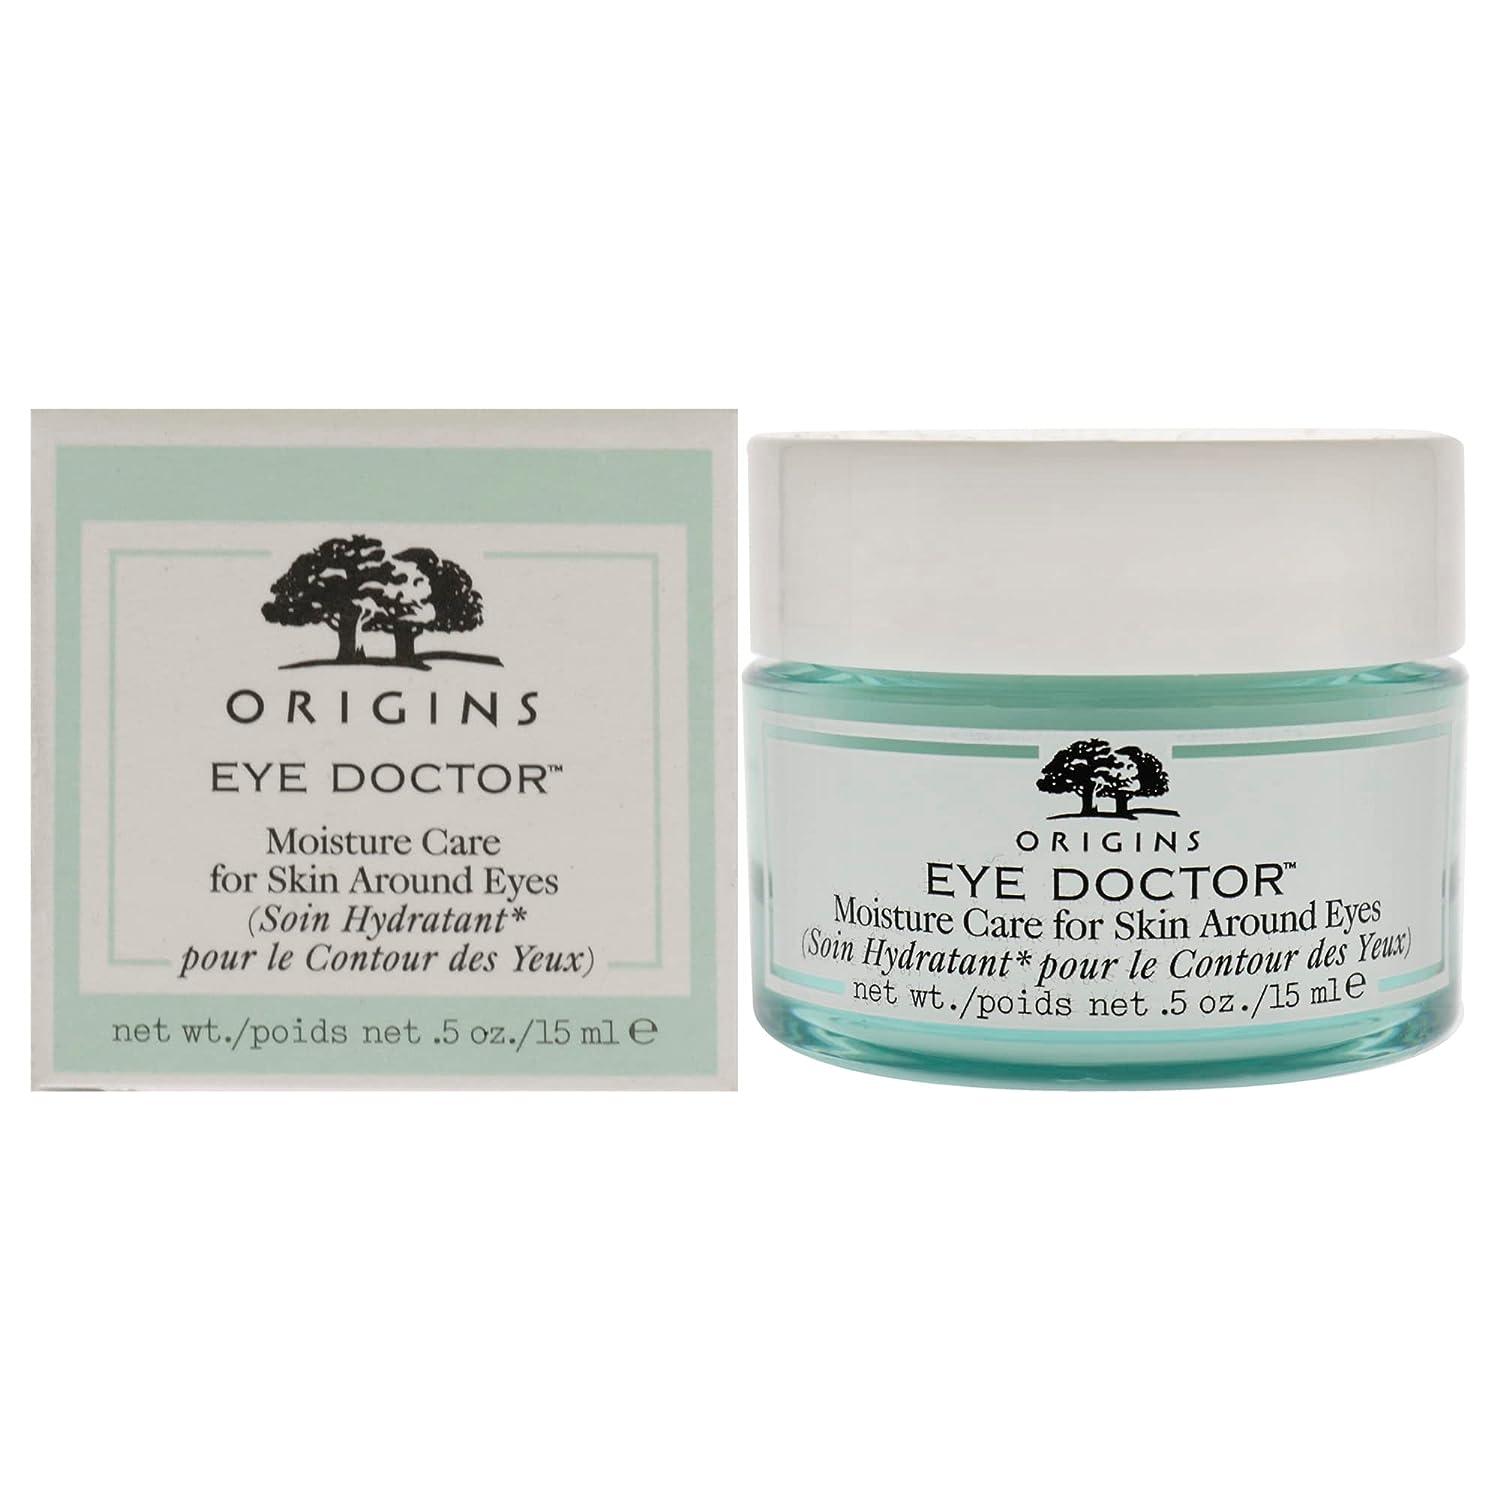 Origins Eye Doctor Moisture Care for Skin Around Eyes, 0.5